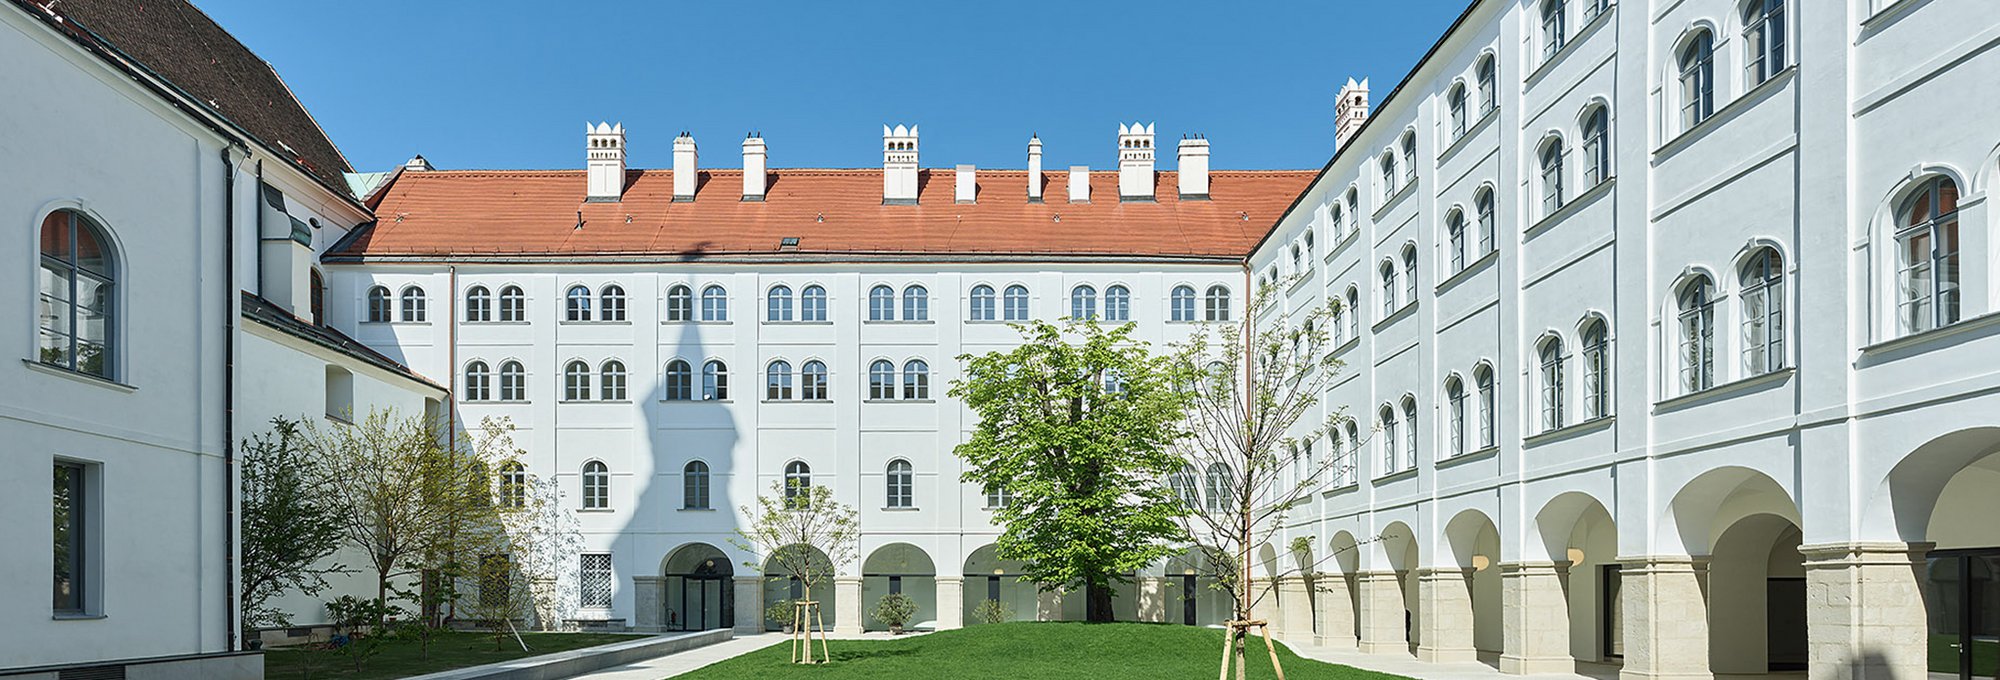 Arkadenhof im Campus Akademie